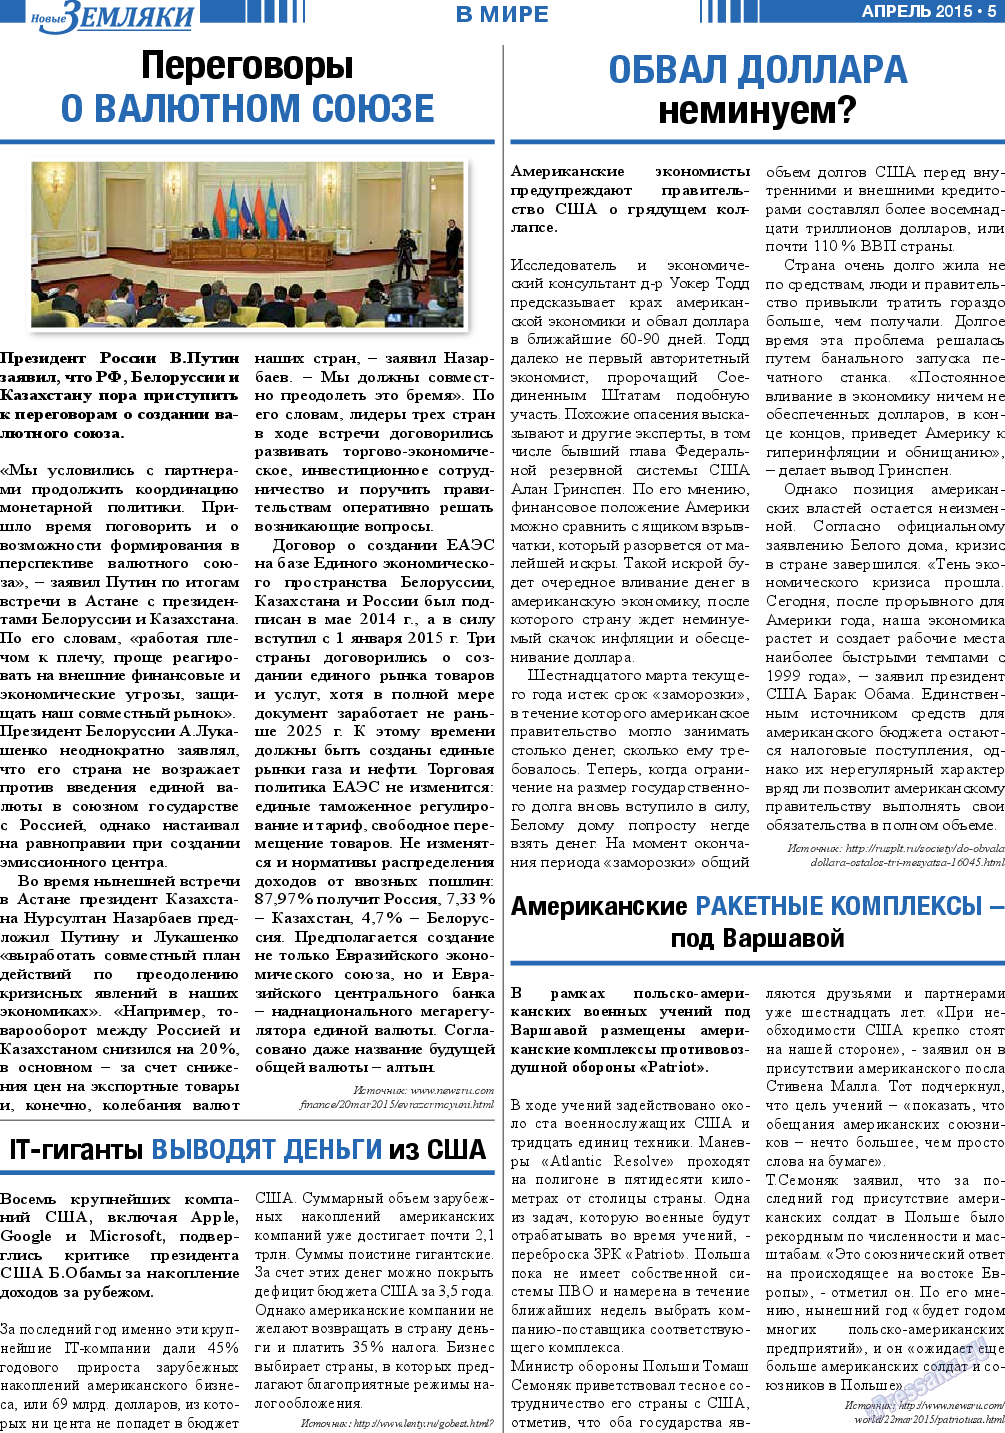 Новые Земляки, газета. 2015 №4 стр.5